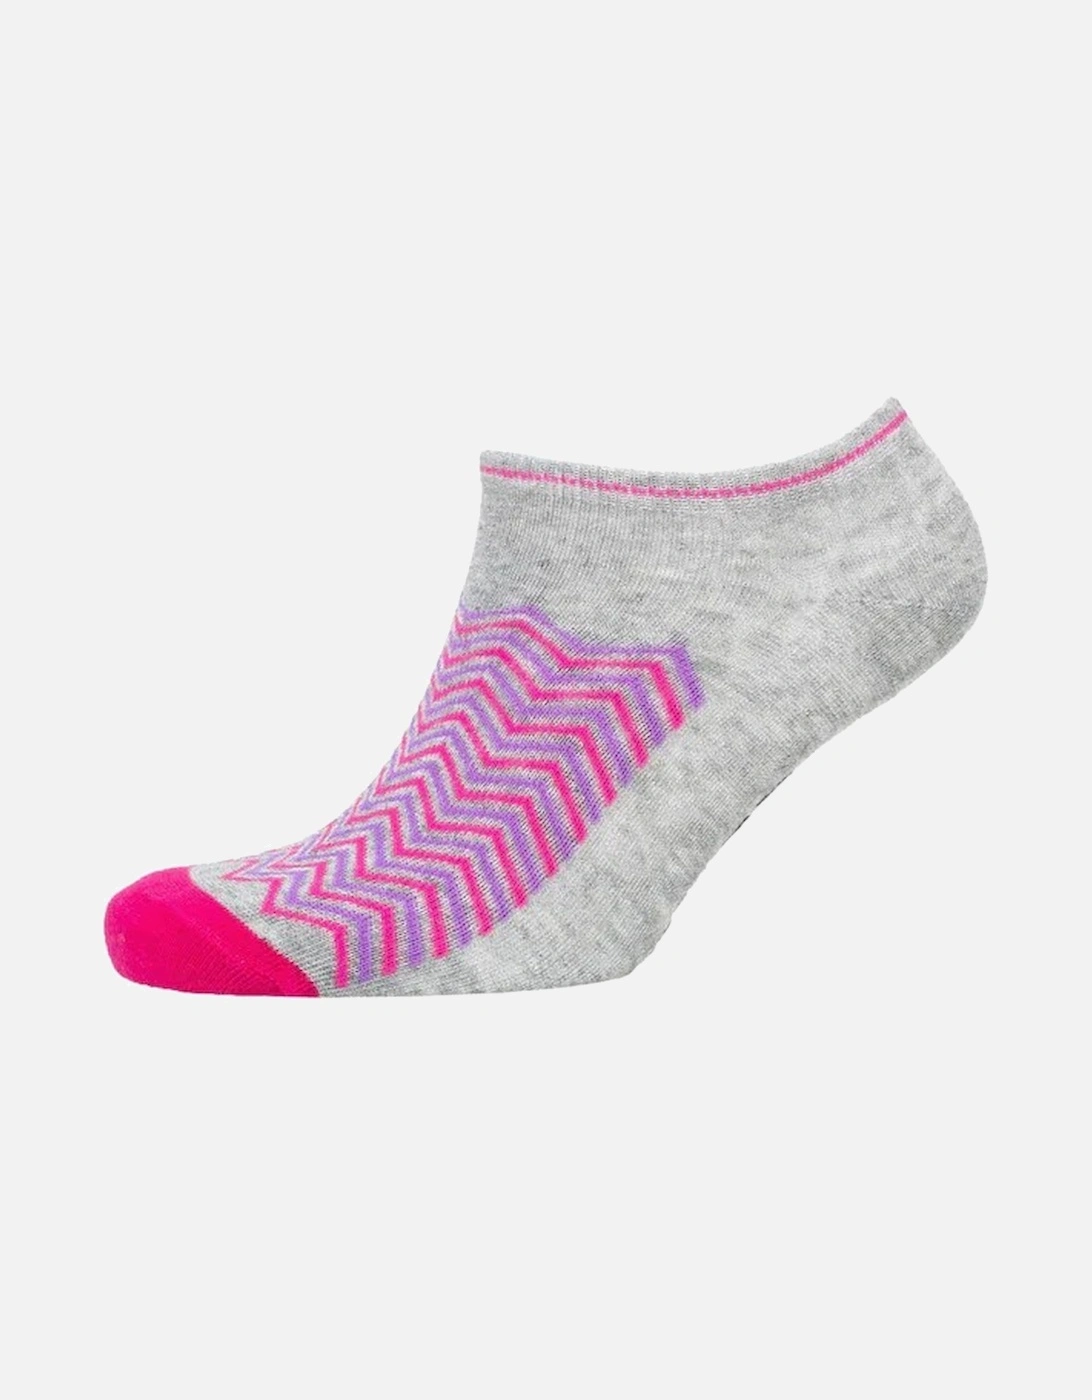 Womens/Ladies Cheveon Trainer Socks (Pack of 3)